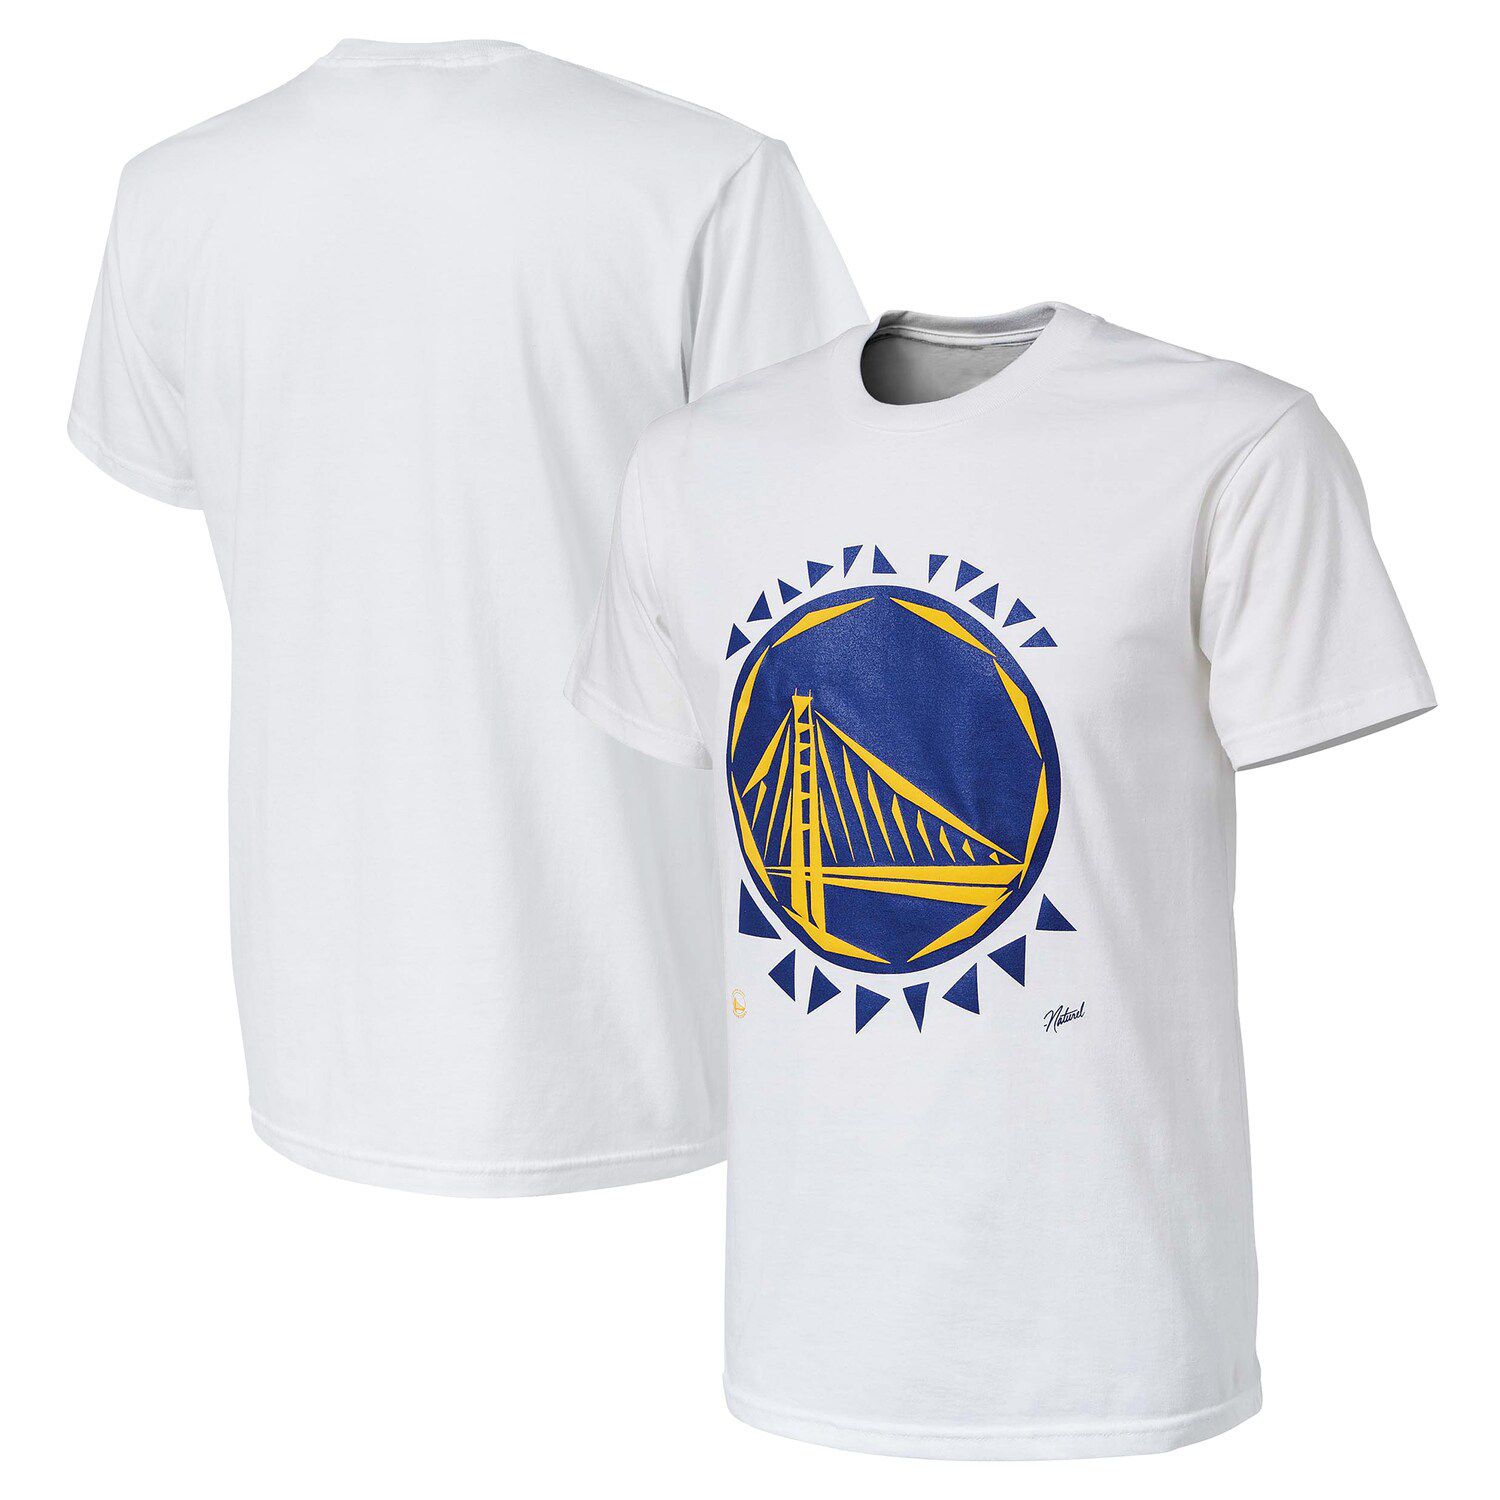 Мужская белая футболка Golden State Warriors NBA x Naturel без идентификатора вызывающего абонента